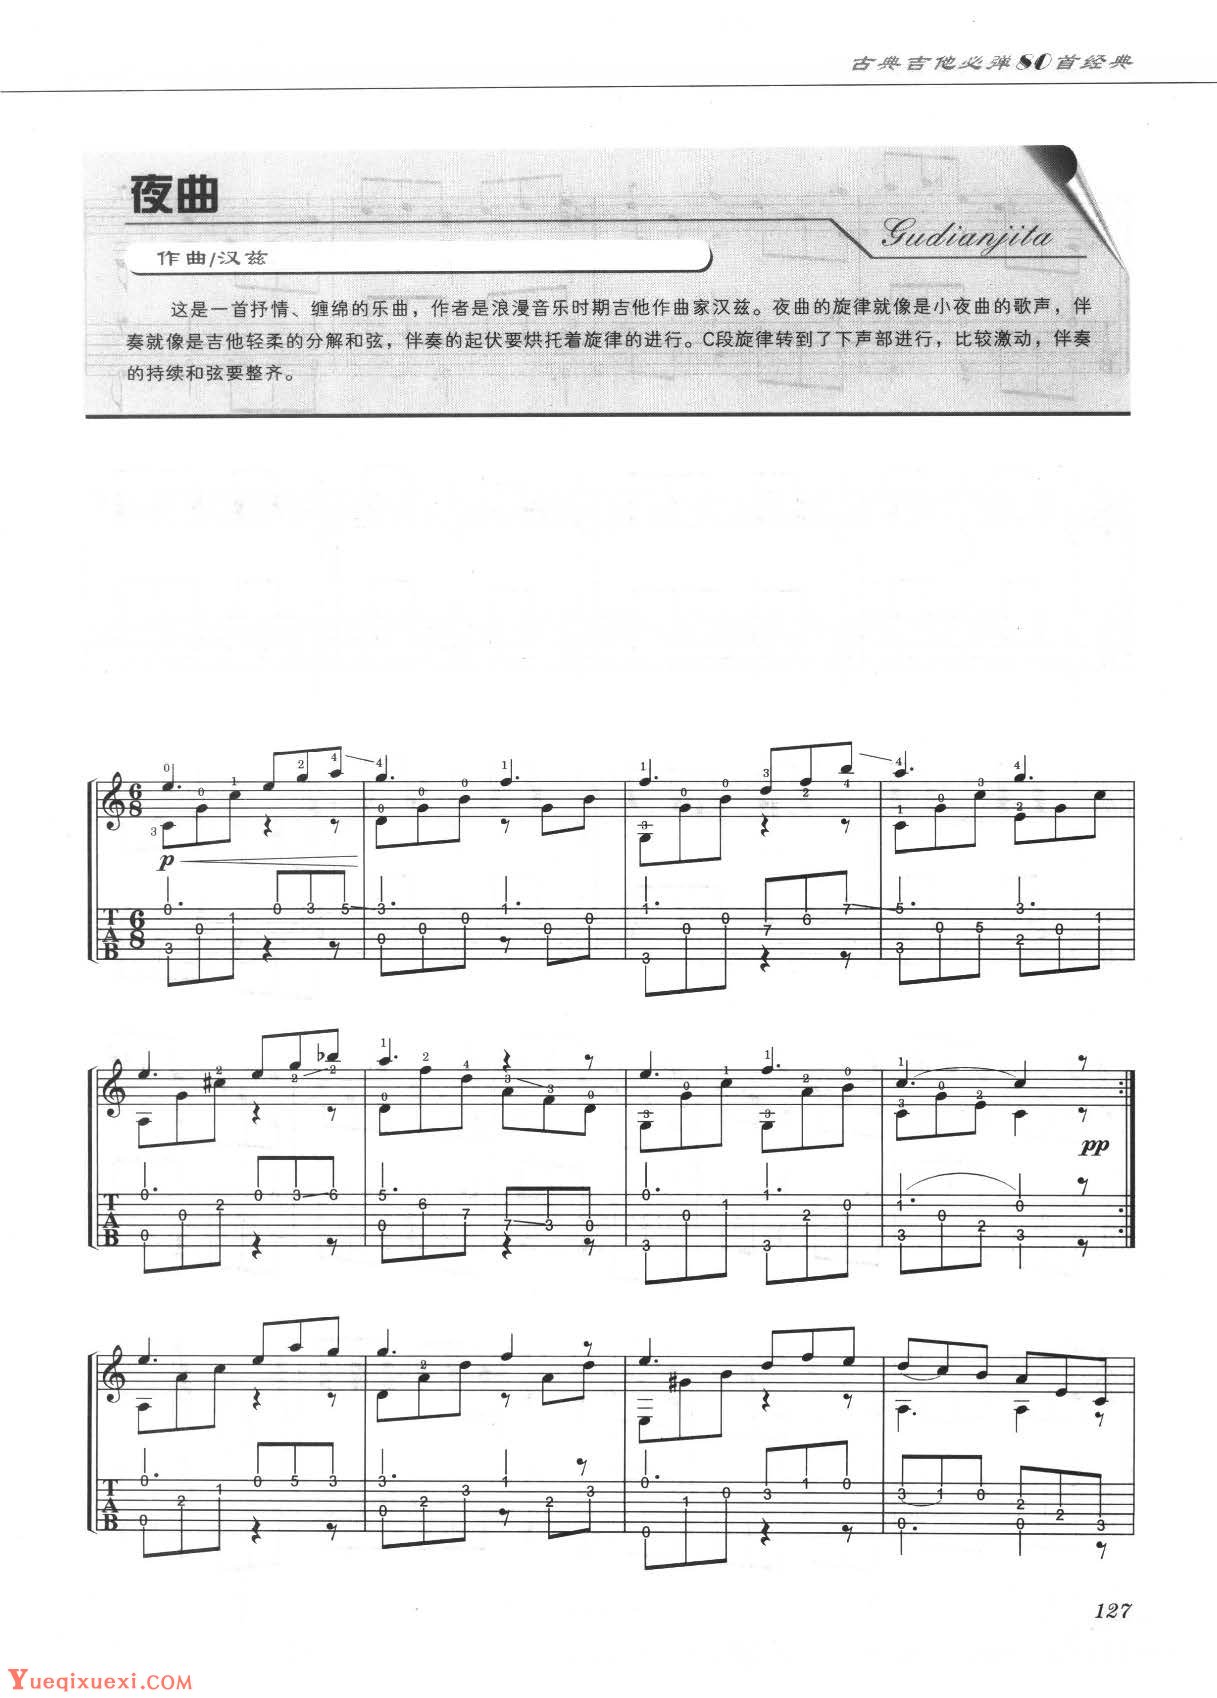 古典吉他名曲谱《皮革探戈》迪安斯-古典吉他谱 - 乐器学习网